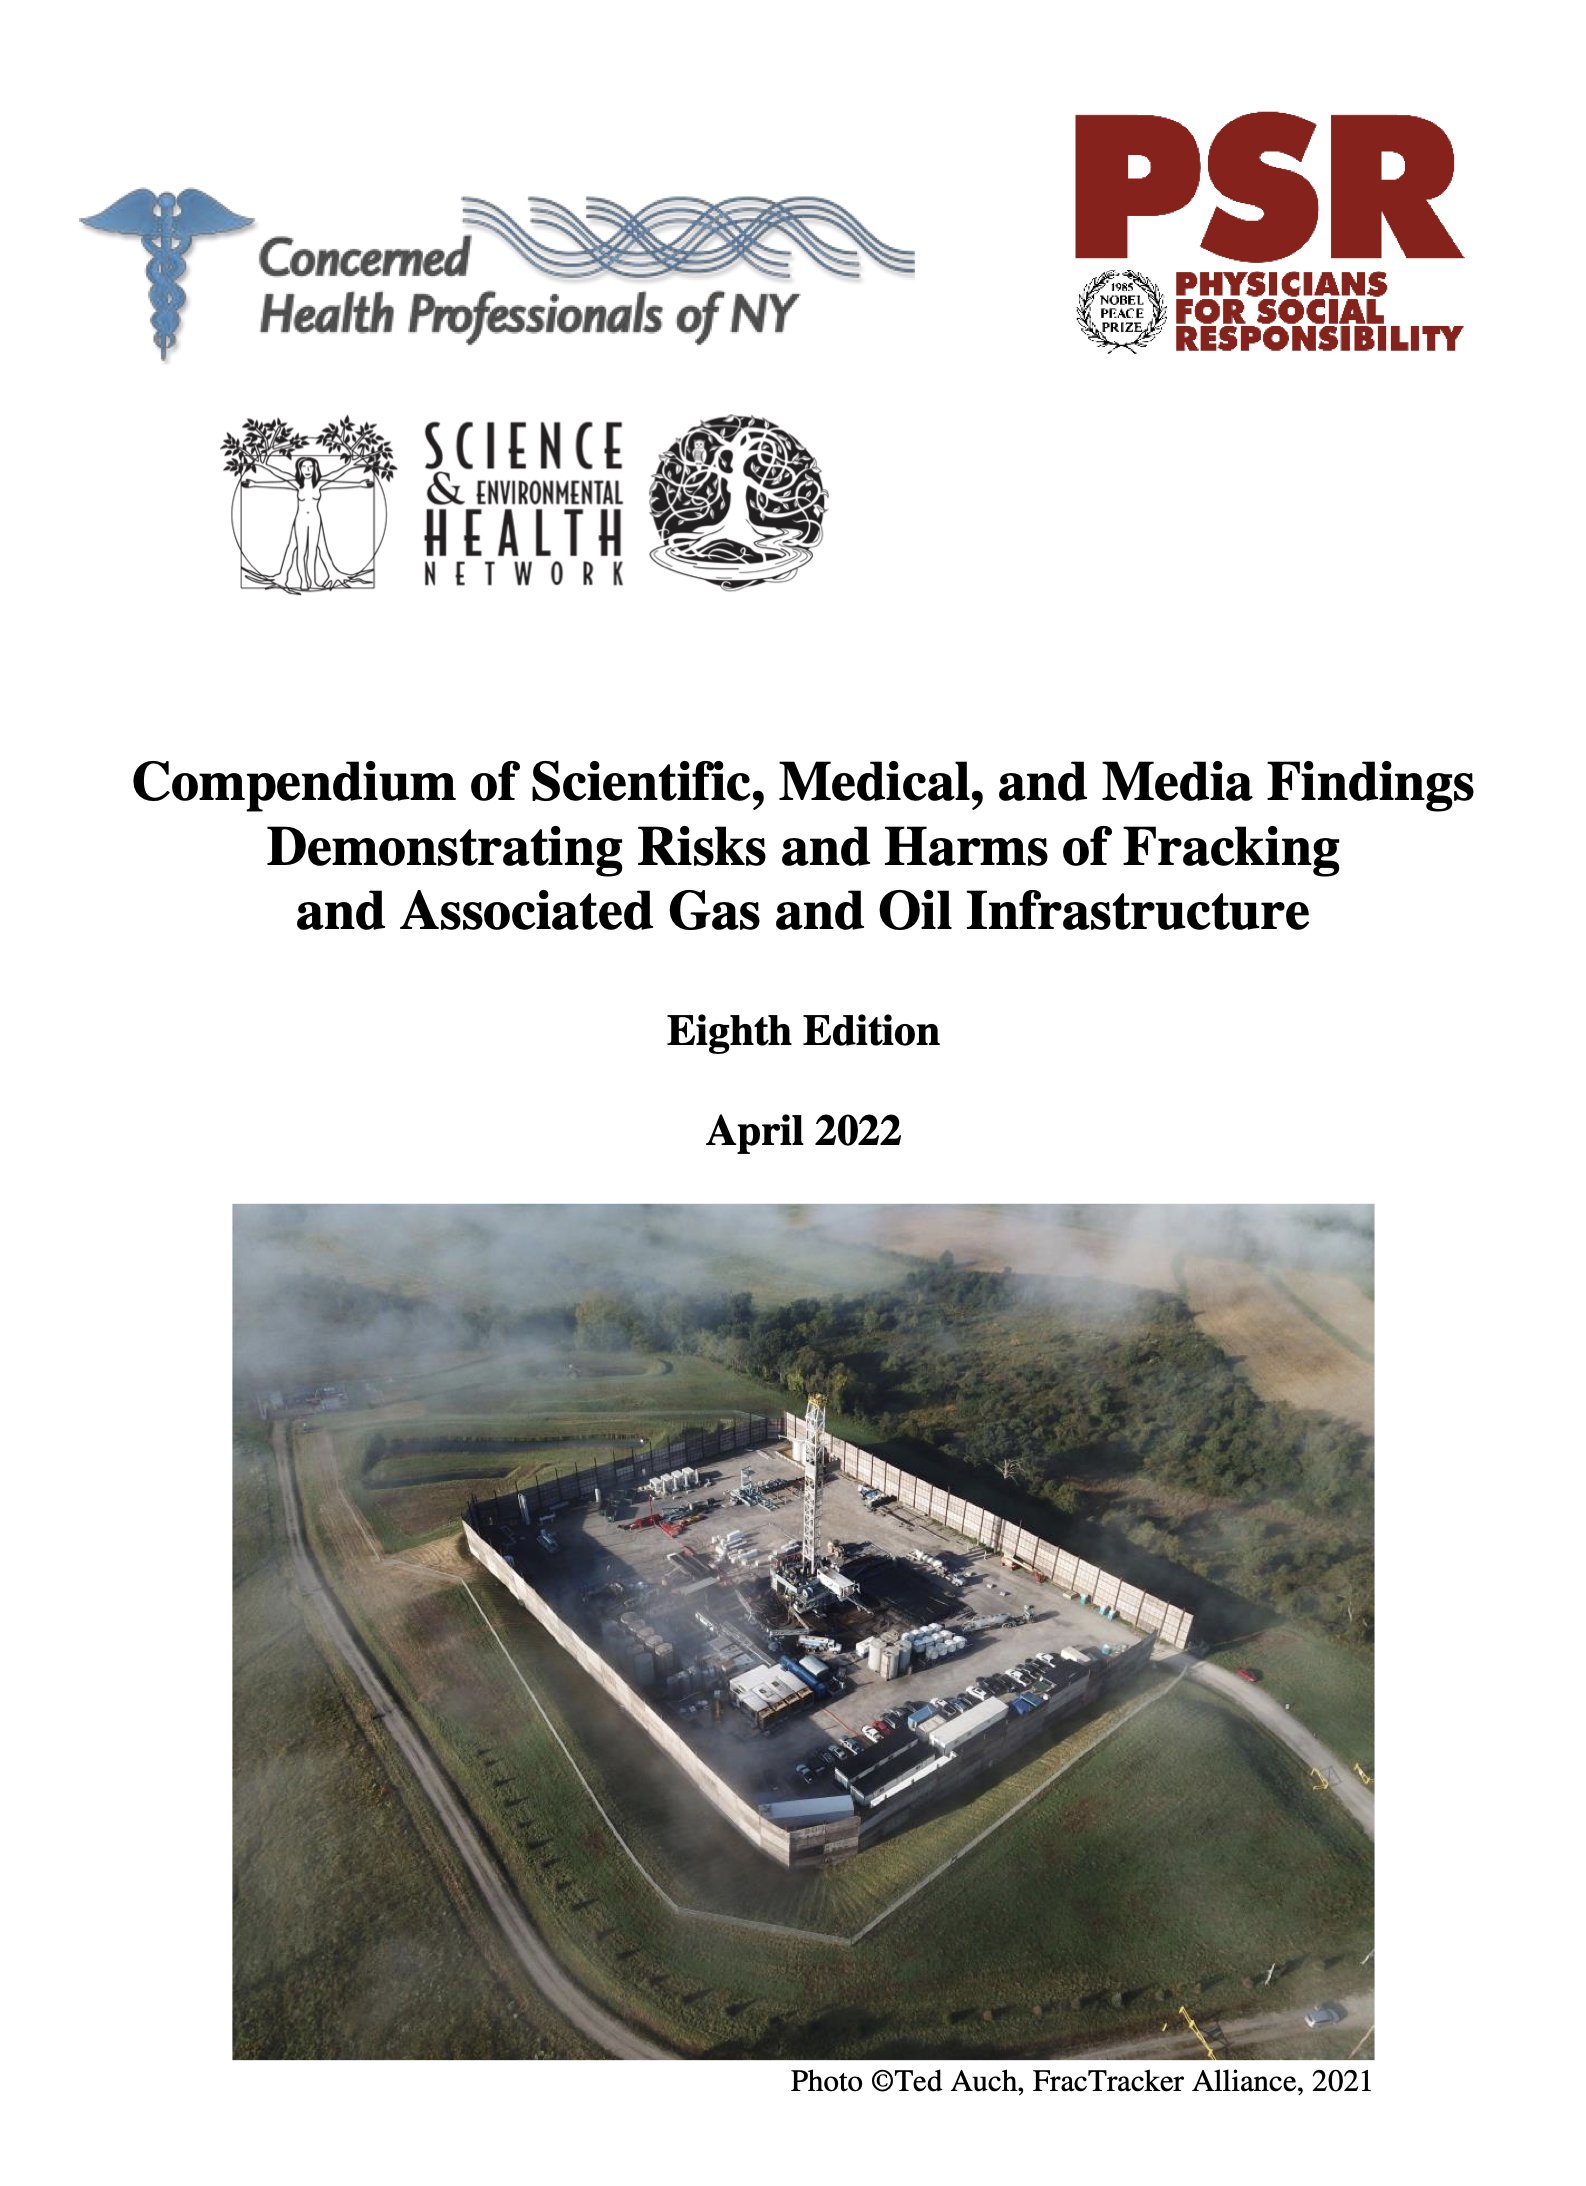 Fracking Compendium 8